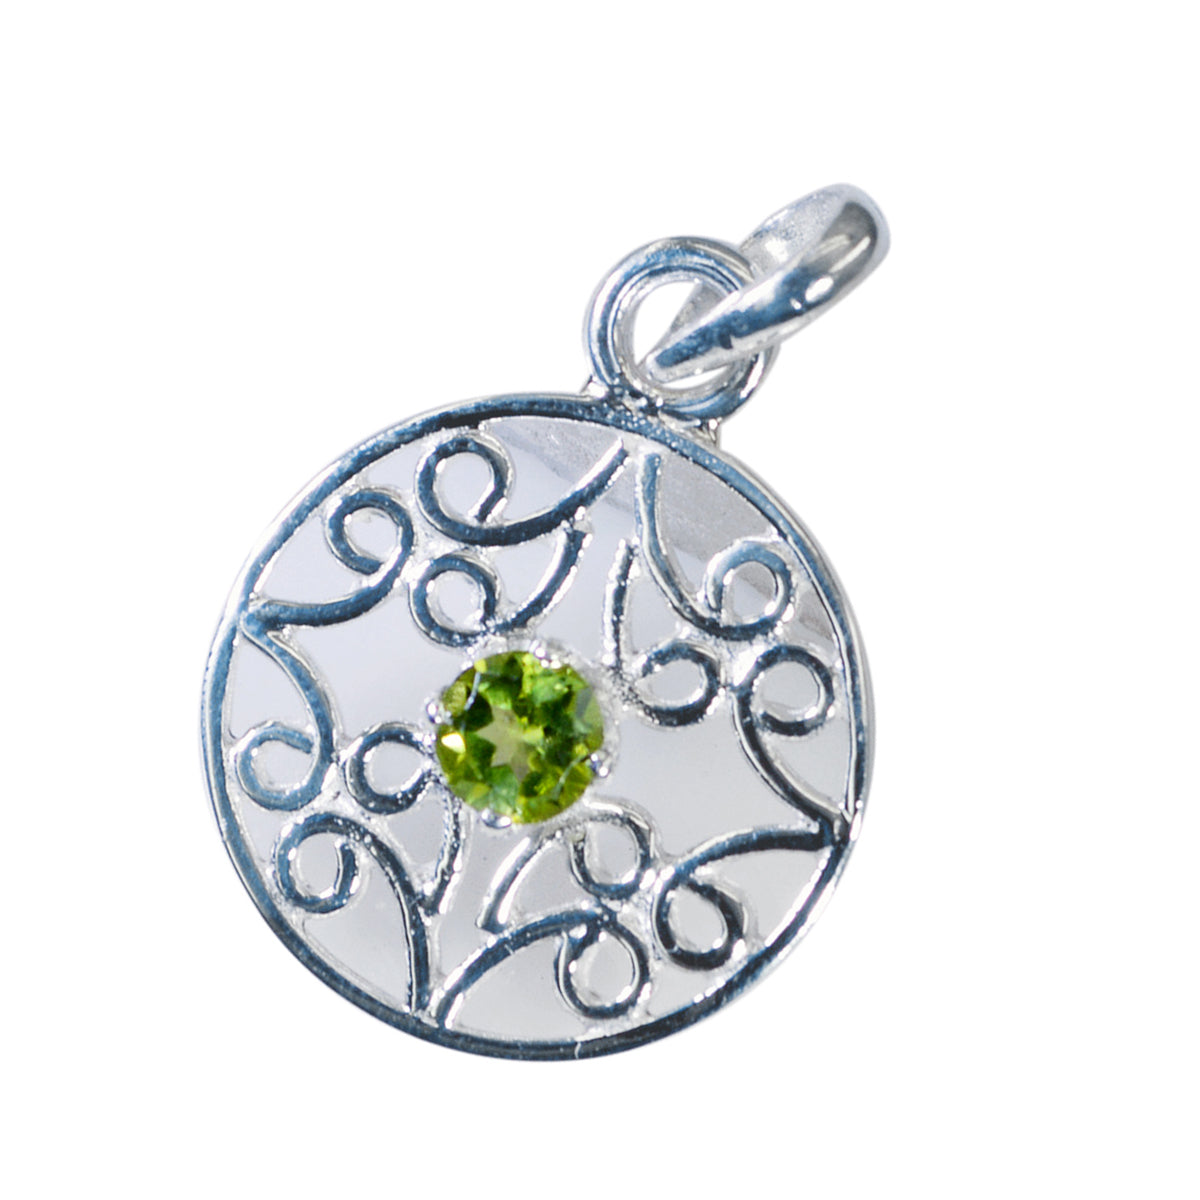 Riyo spunky gems colgante redondo de plata con peridoto verde facetado, regalo para esposa